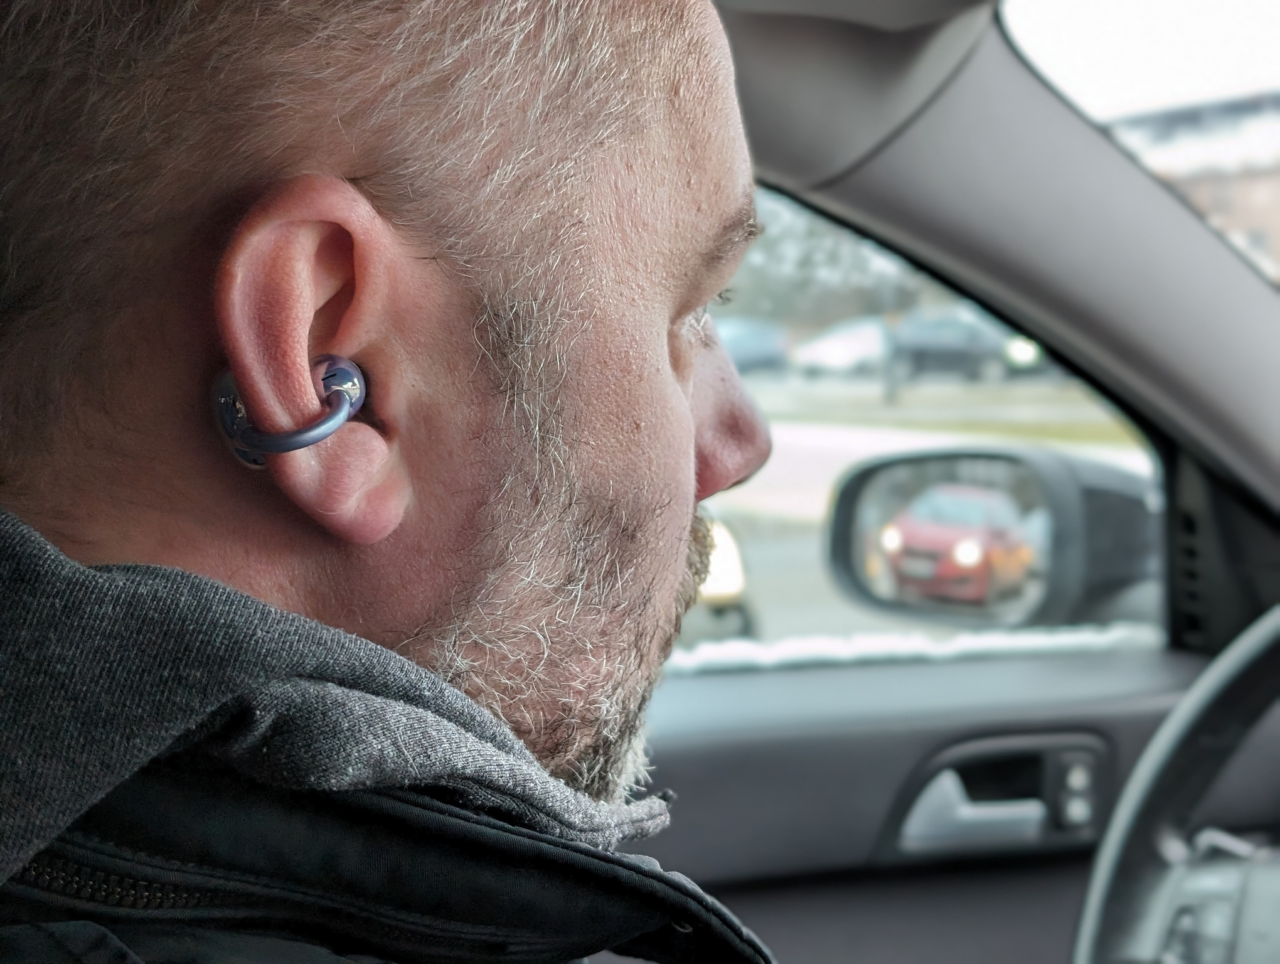 Mężczyzna z bezprzewodowym słuchawkiem w uchu siedzi w samochodzie, w tle widać lusterko boczne i inny samochód.